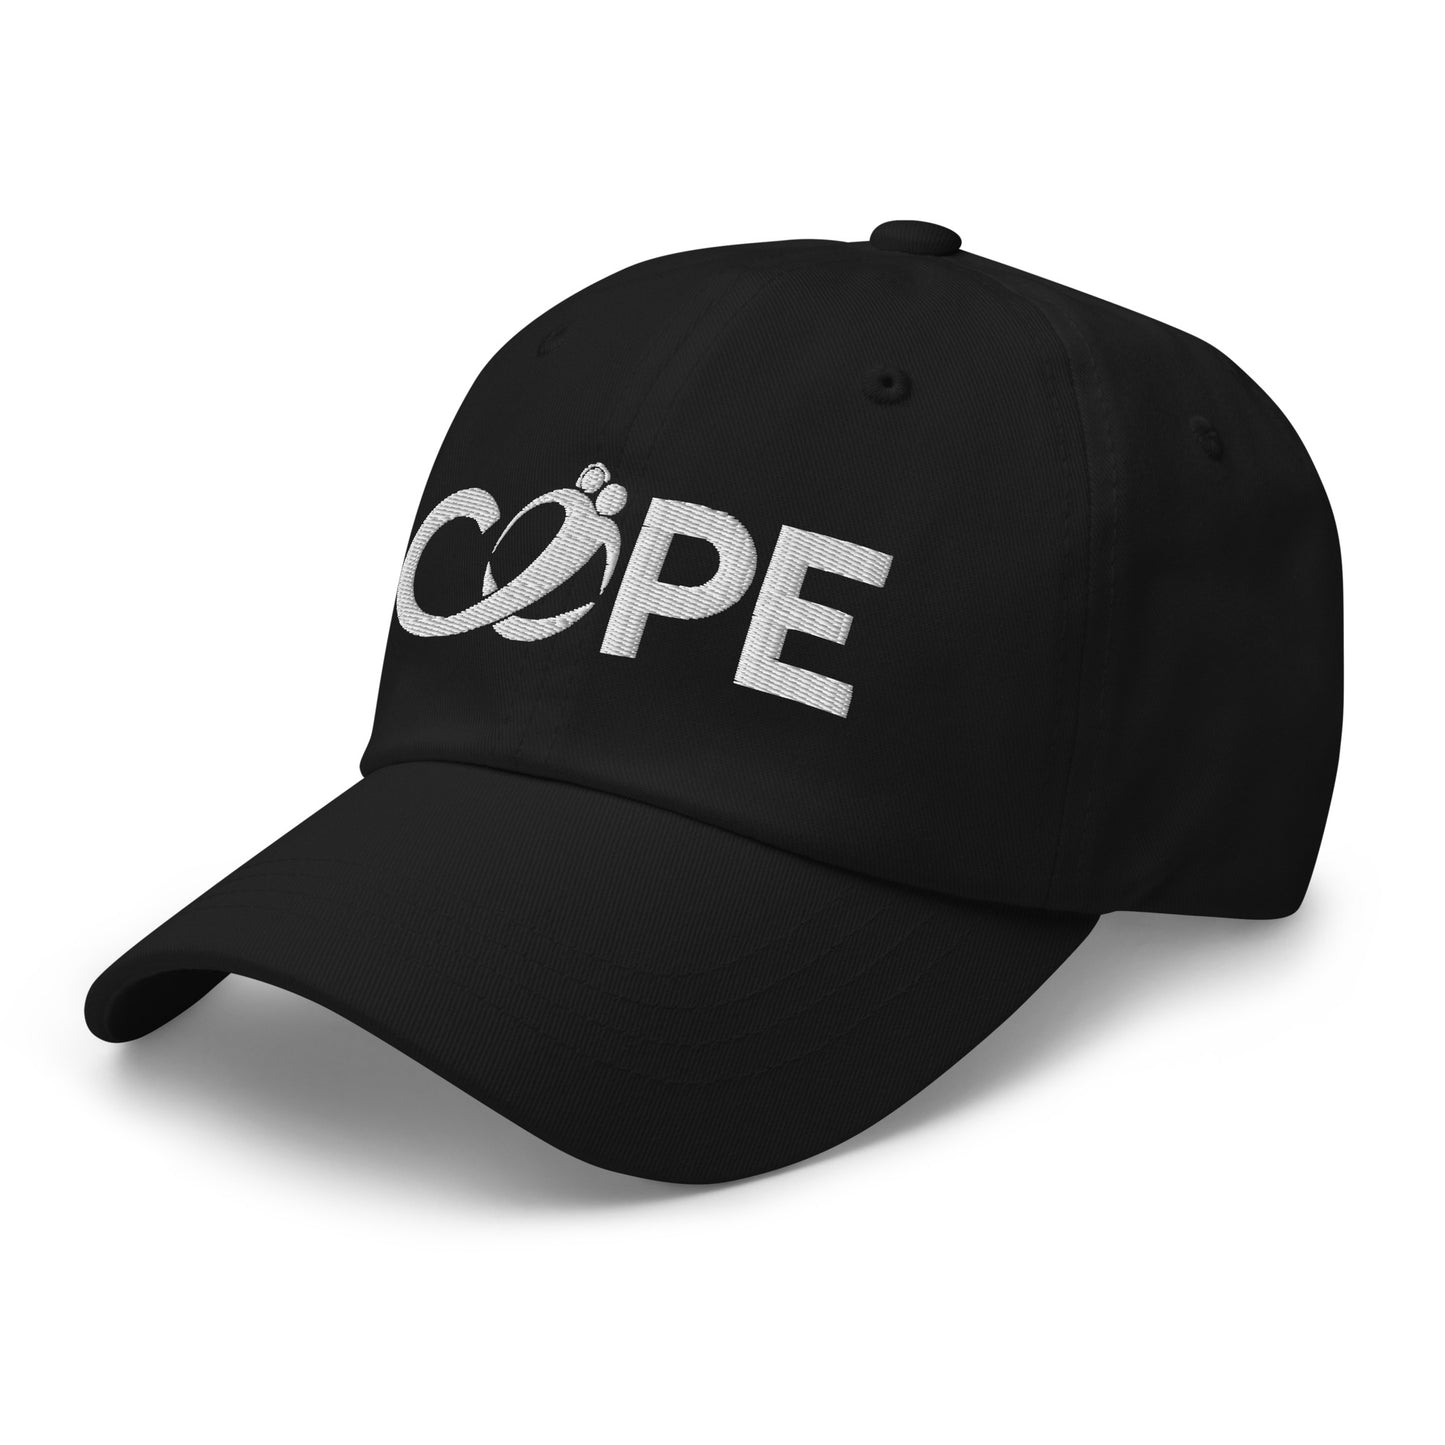 
                  
                    COPE - Dad hat
                  
                